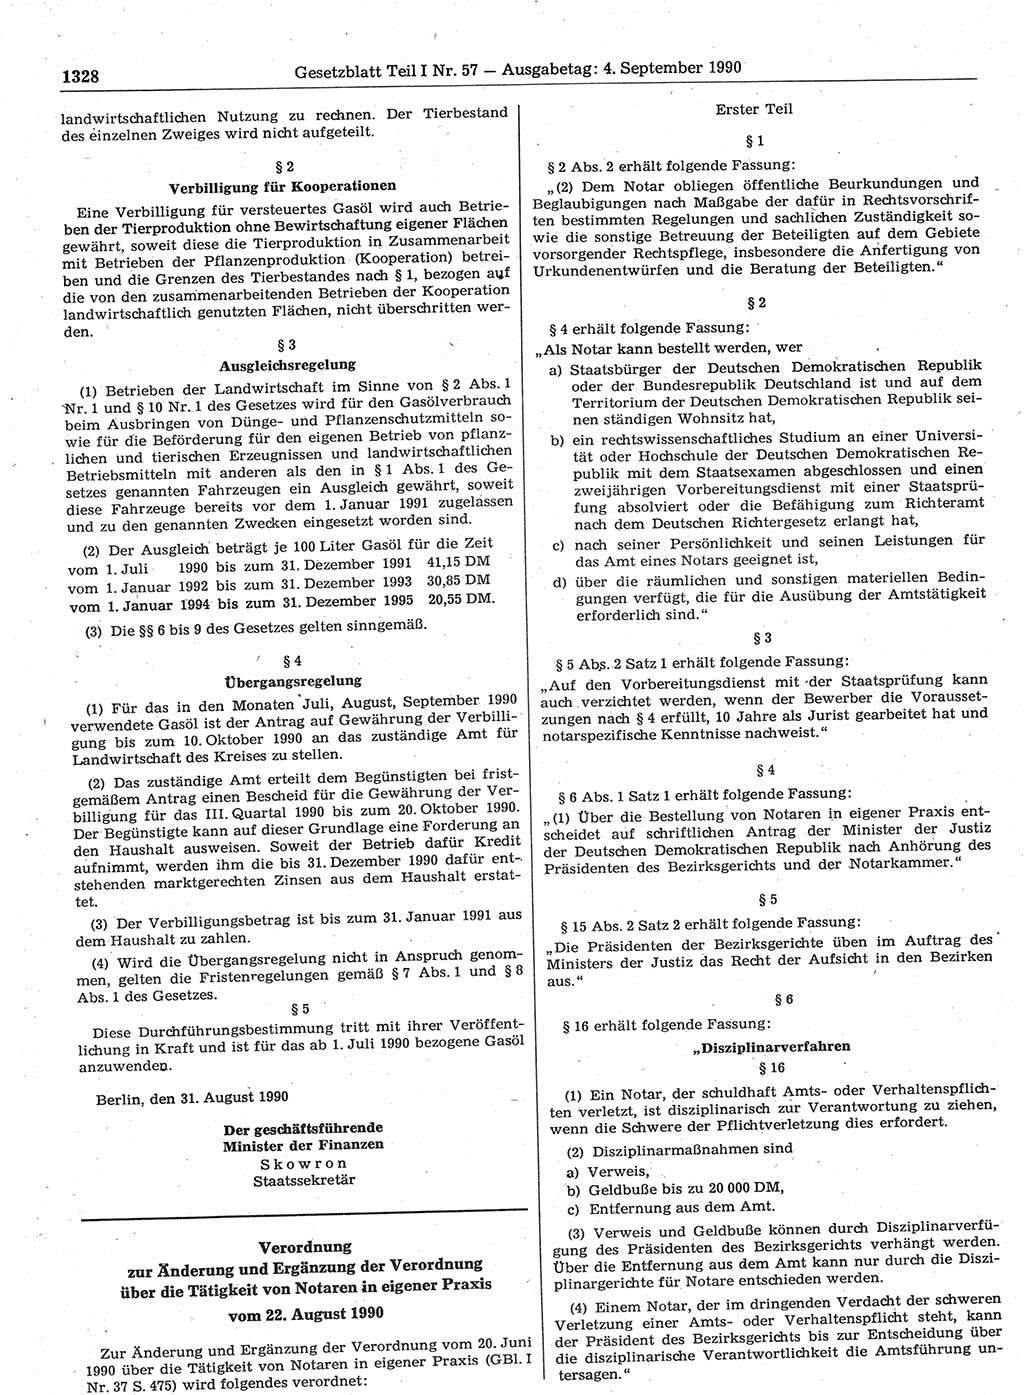 Gesetzblatt (GBl.) der Deutschen Demokratischen Republik (DDR) Teil Ⅰ 1990, Seite 1328 (GBl. DDR Ⅰ 1990, S. 1328)